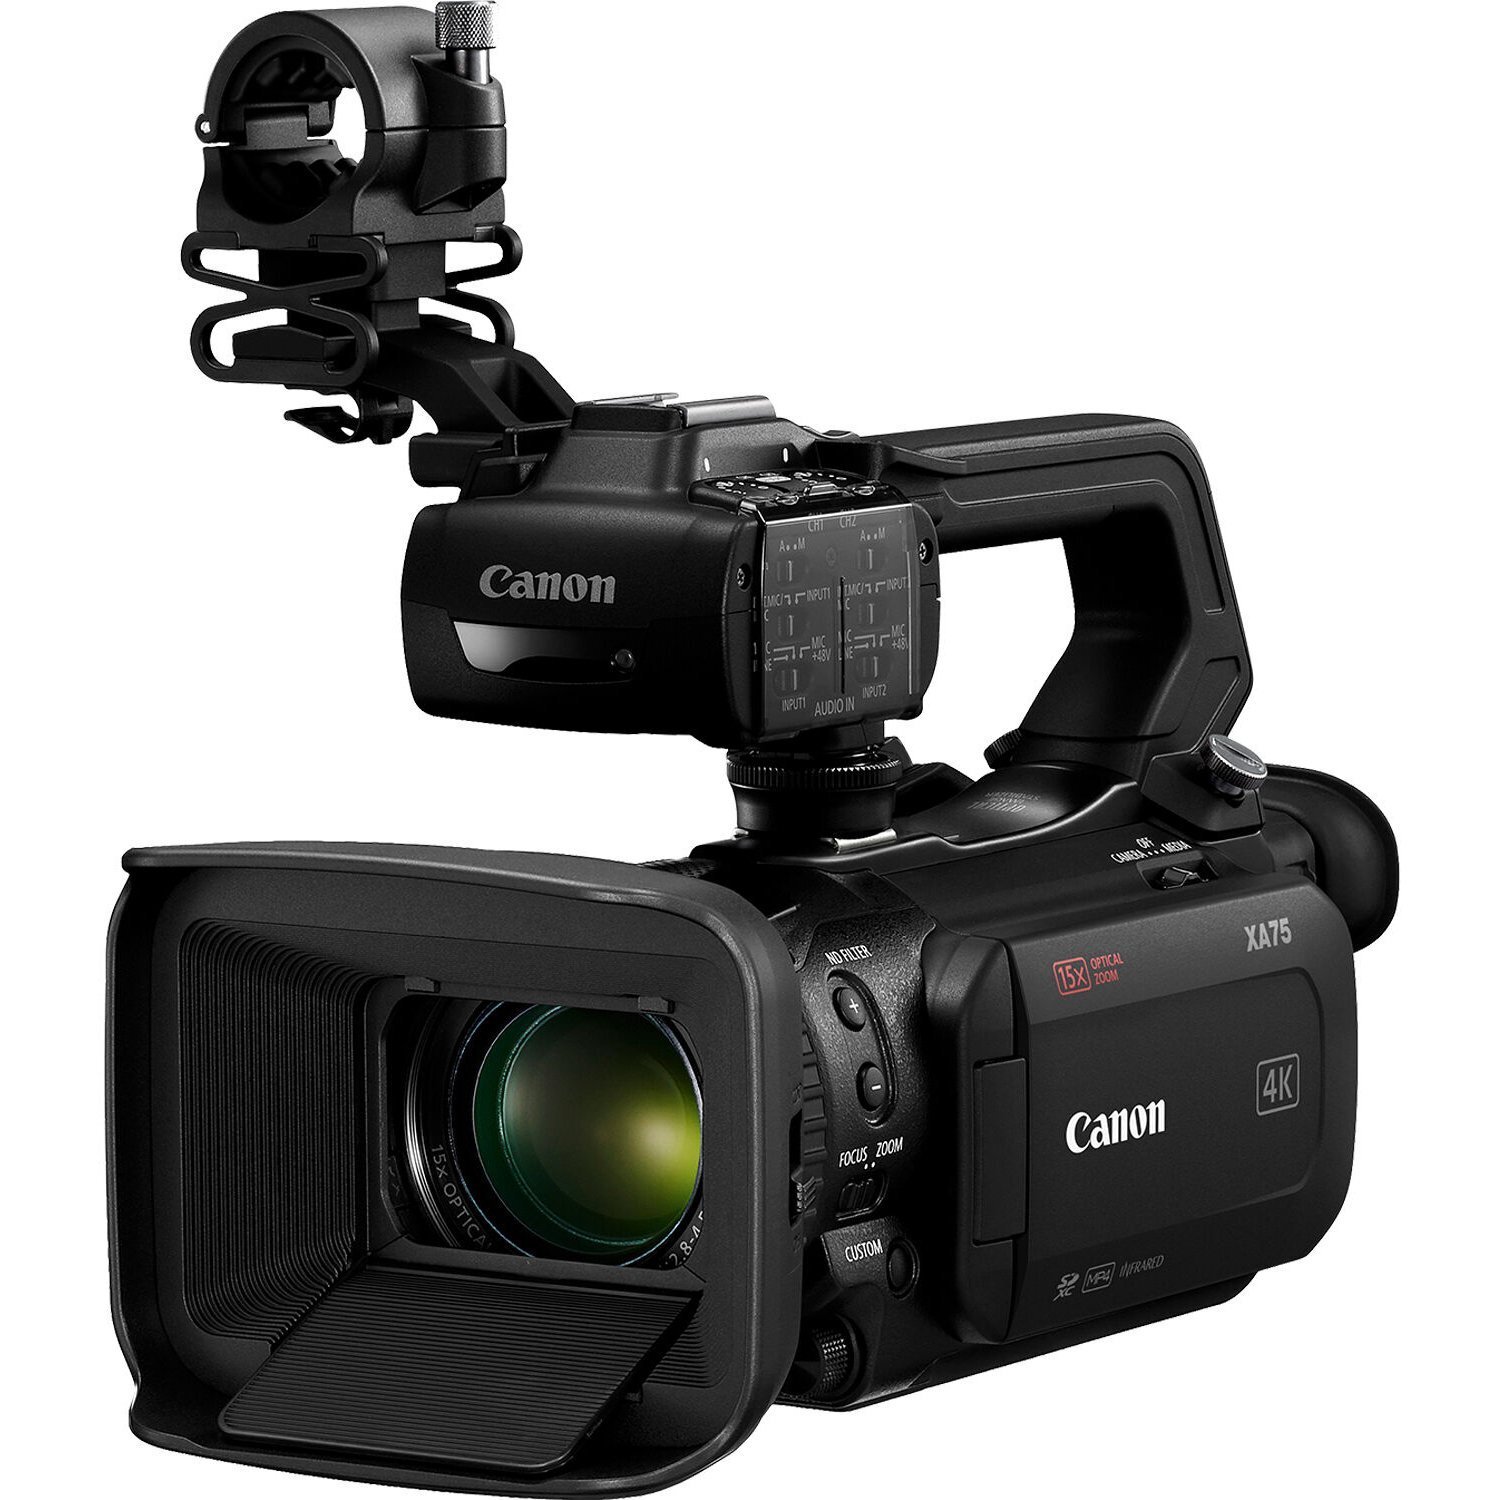 Видеокамера Canon EOS XA 75